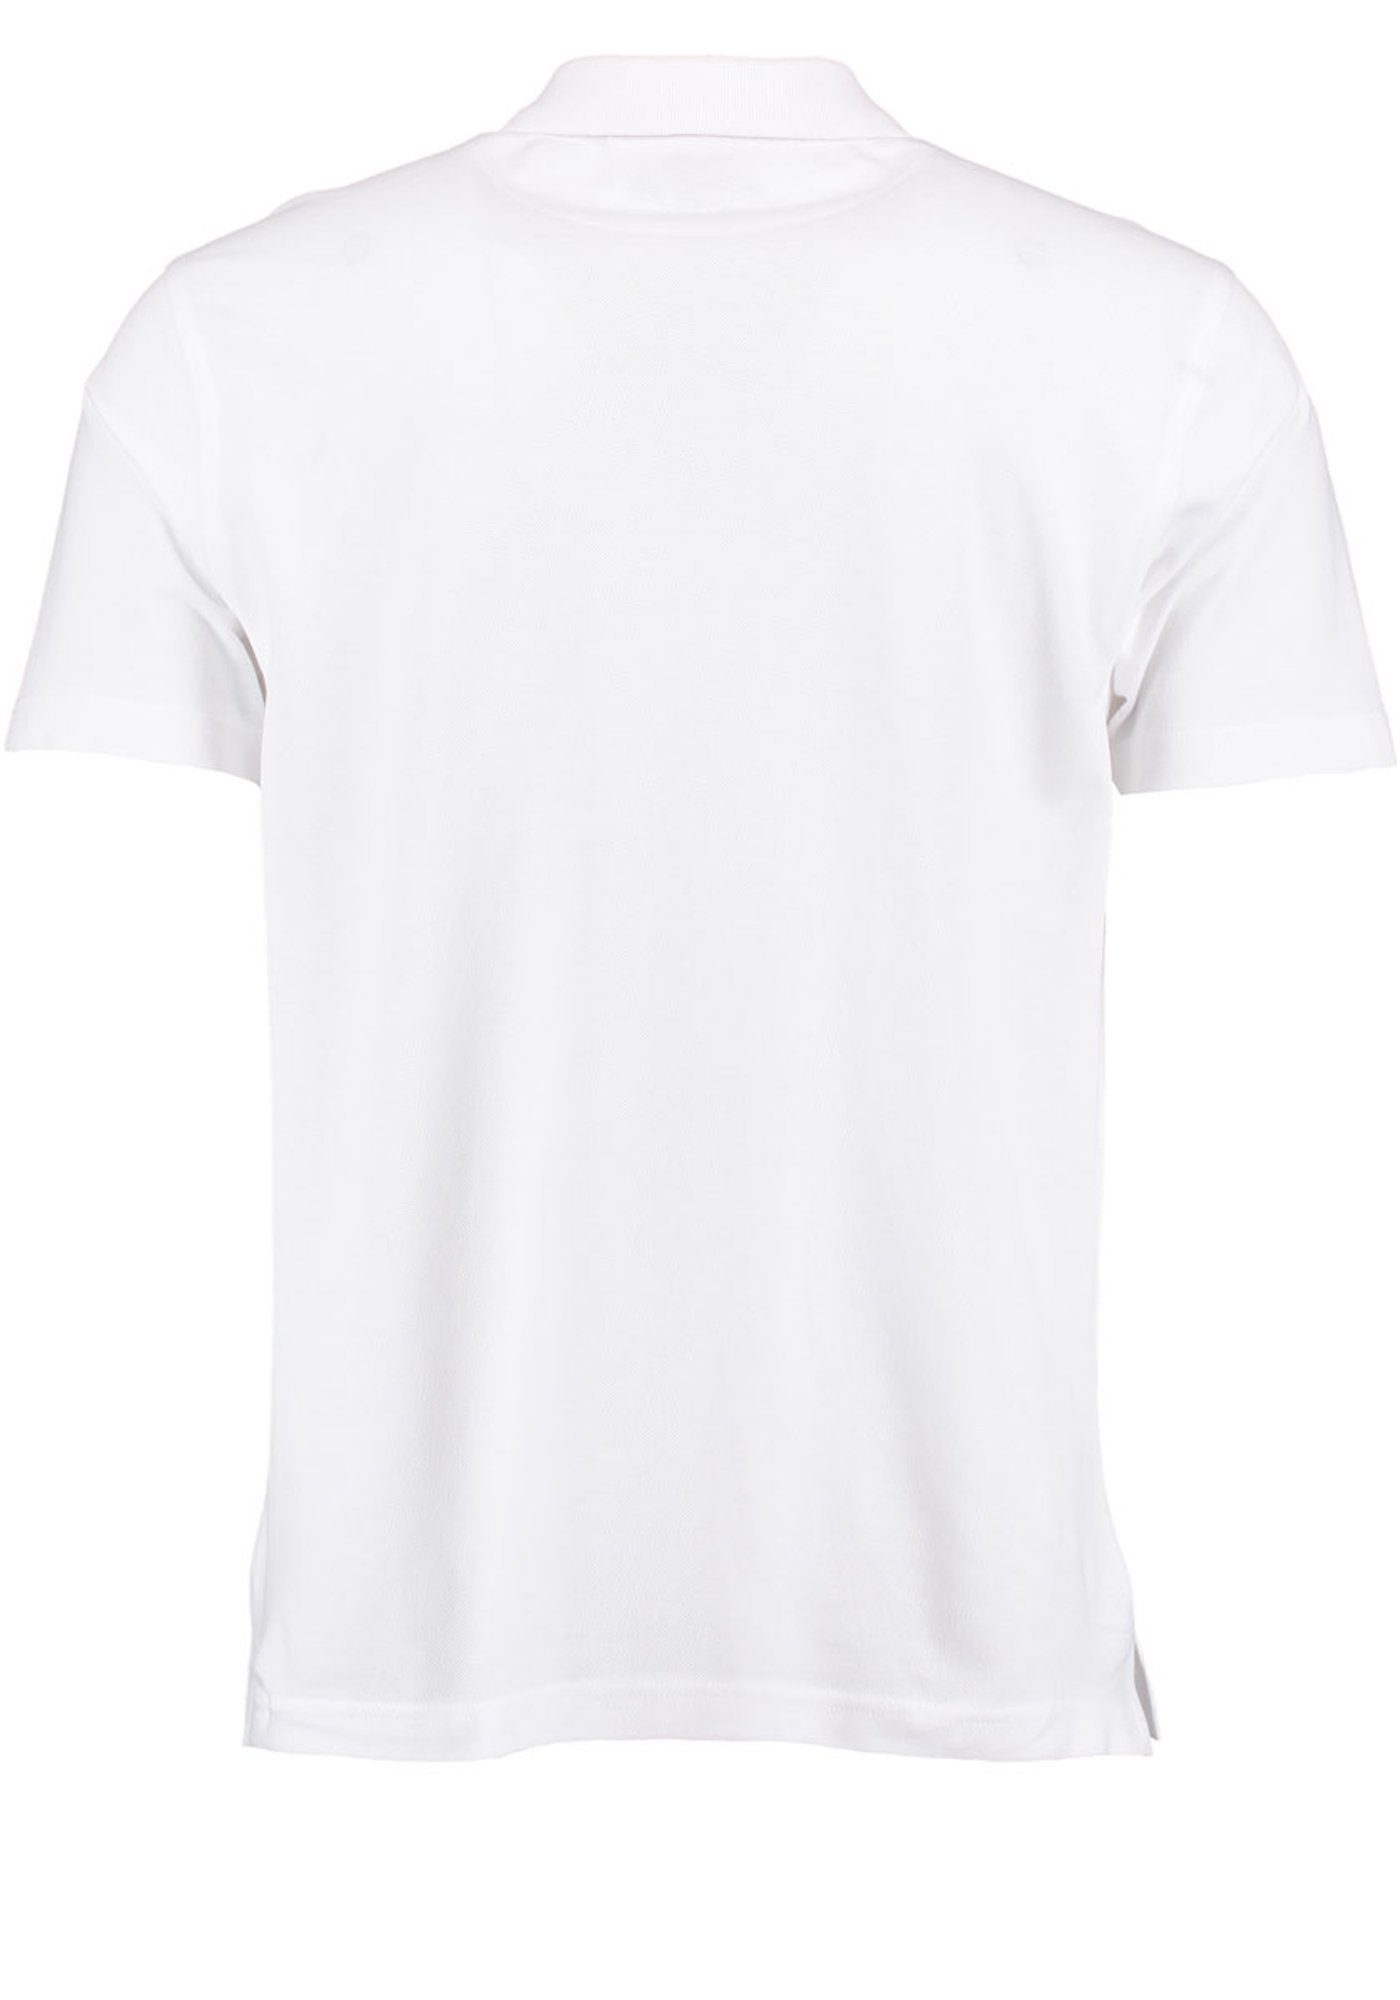 Poloshirt mit Kurzarm Esoqo Knopfleiste der weiß Jagdshirt Stickereien OS-Trachten auf